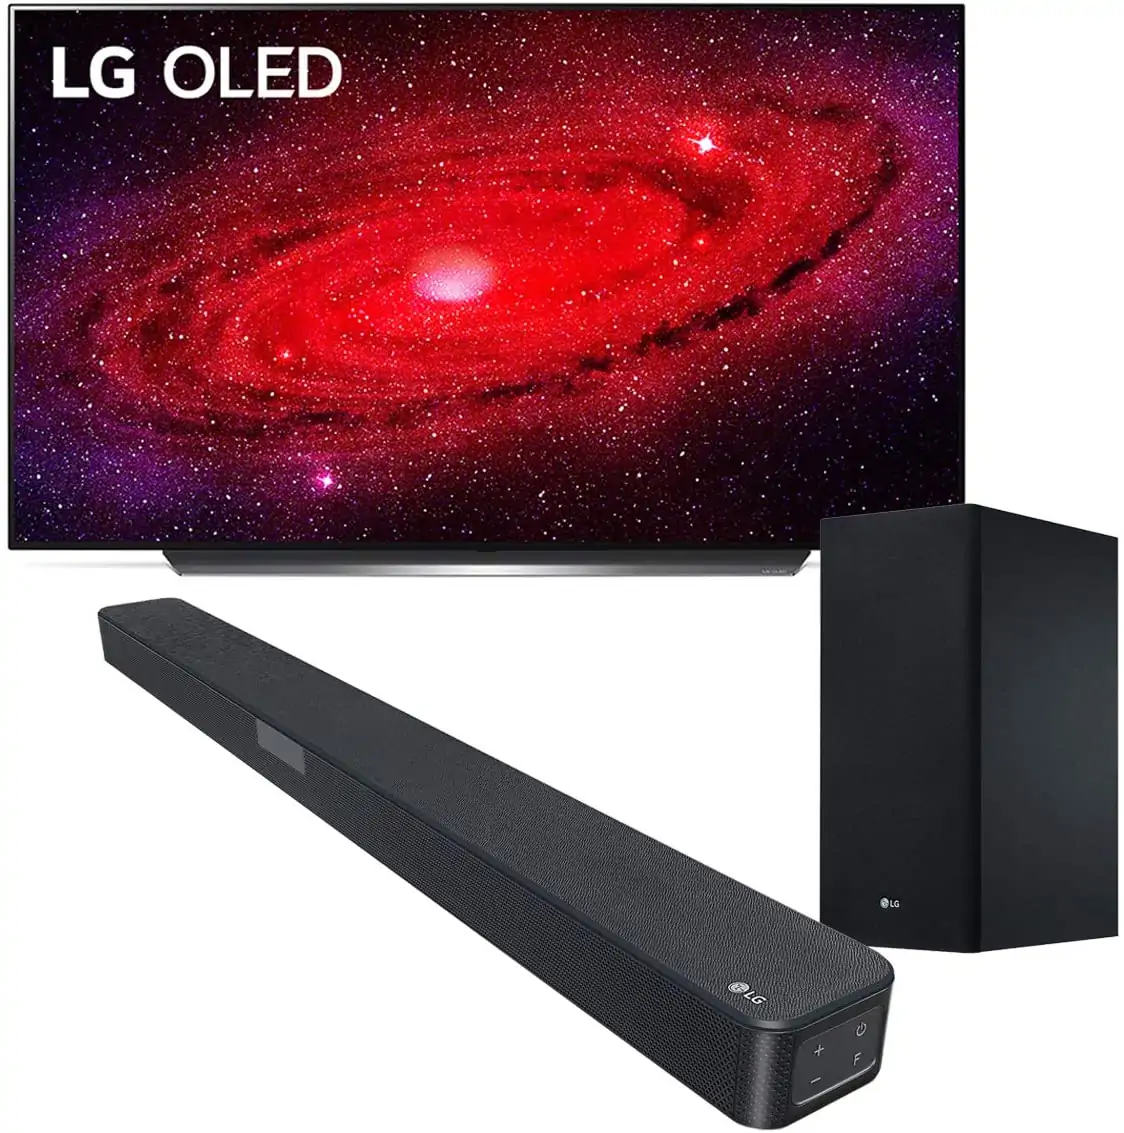 LG OLED TV AI ThinQ